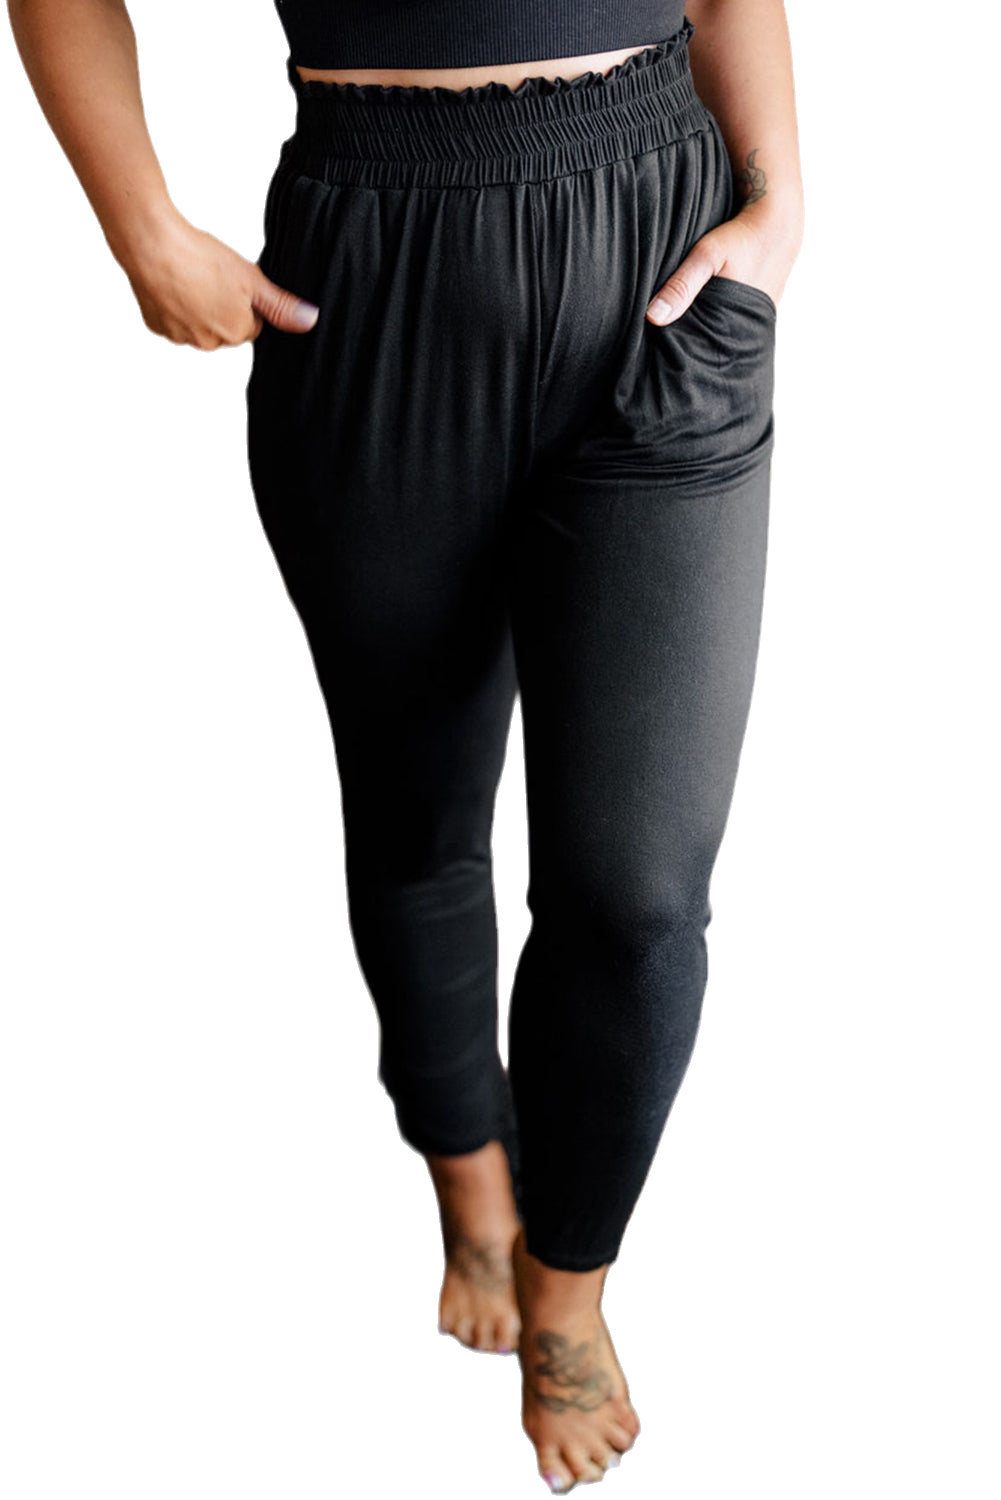 Schwarze Plus-Size-Hose mit Rüschen und Taschen und hoher Taille